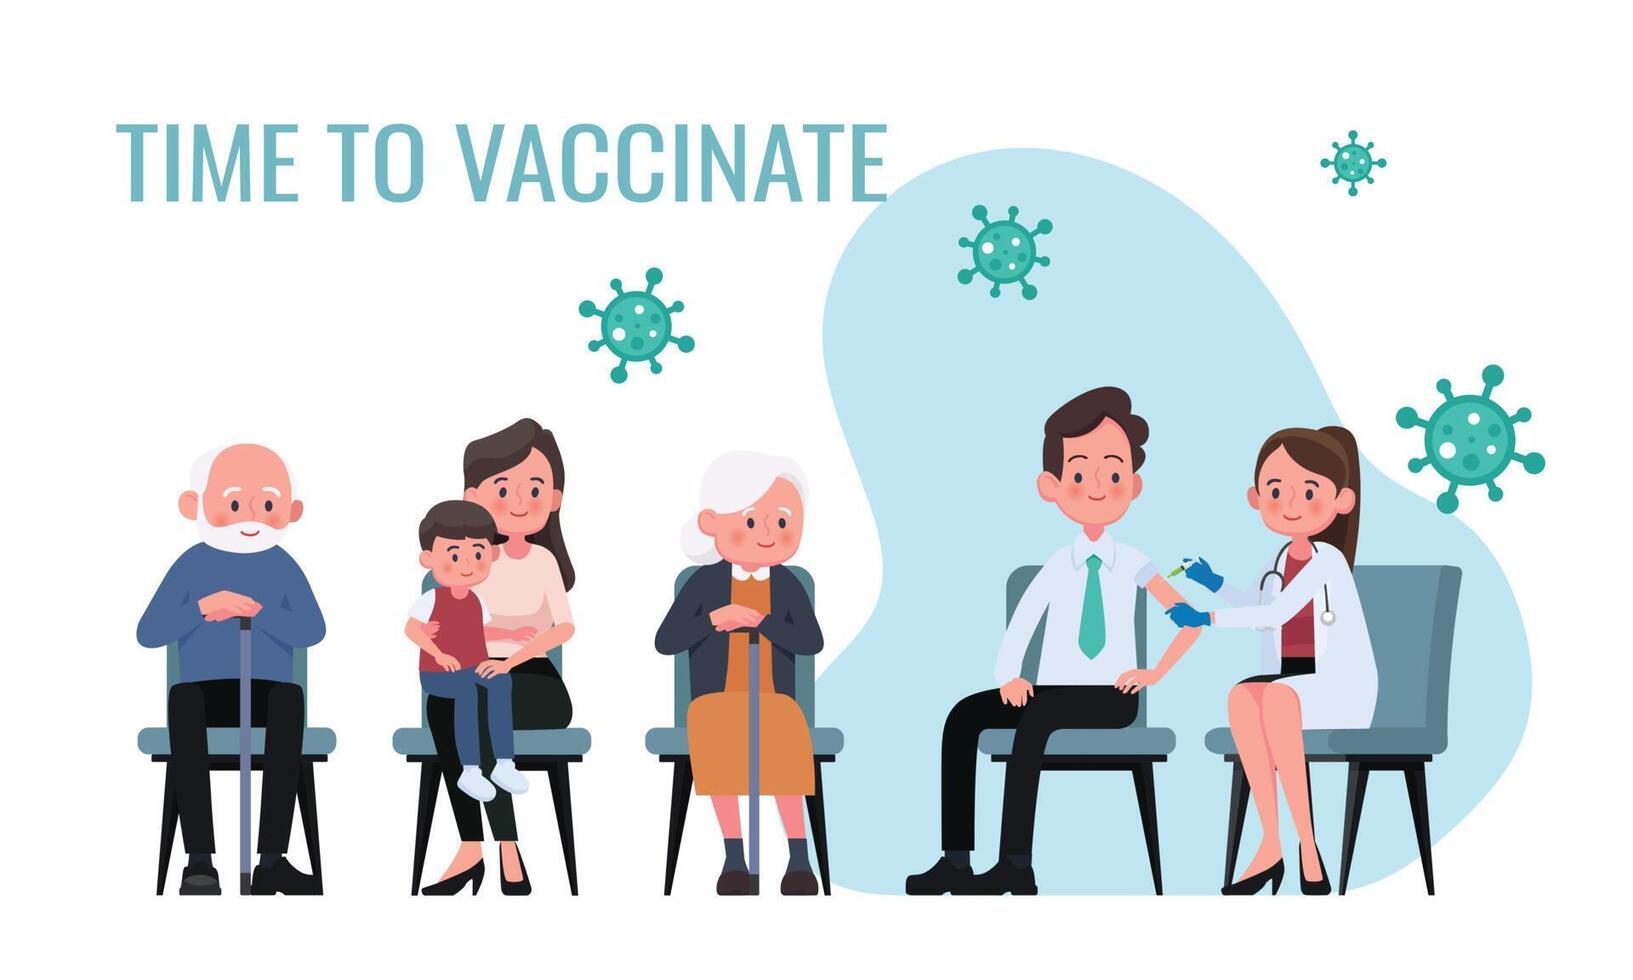 läkare gör ett injektion av influensa vaccin till män i sjukhus. patienter är väntar i linje. sjukvård, coronavirus, covid19, förebyggande och immunisera. vektor